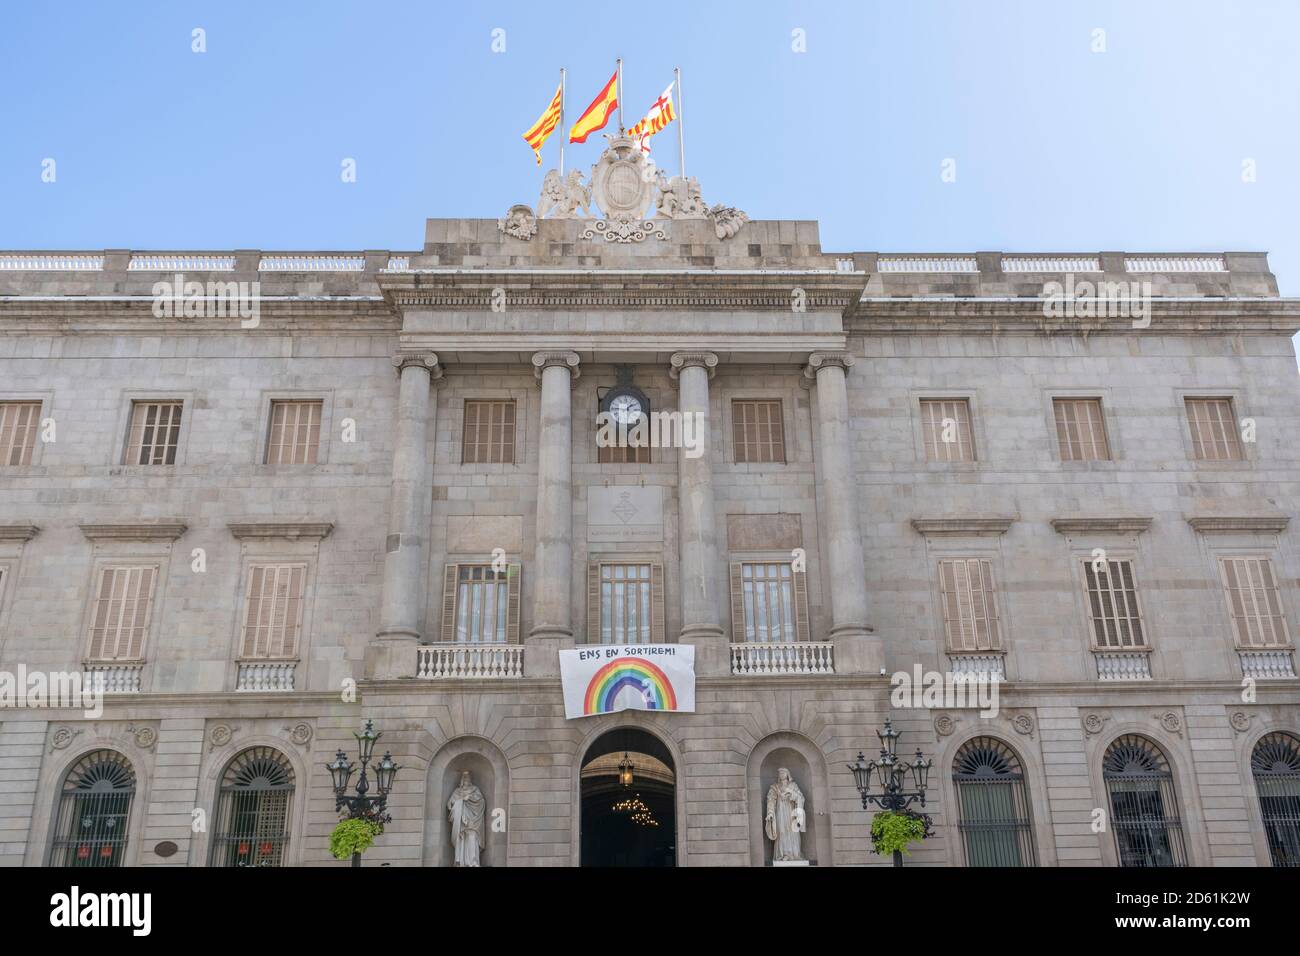 Barcelona, Katalonien, Spanien - 3. Oktober 2020: Rathaus von Barcelona , die Hauptstadt und größte Stadt der autonomen Gemeinschaft Katalonien, und die Stockfoto